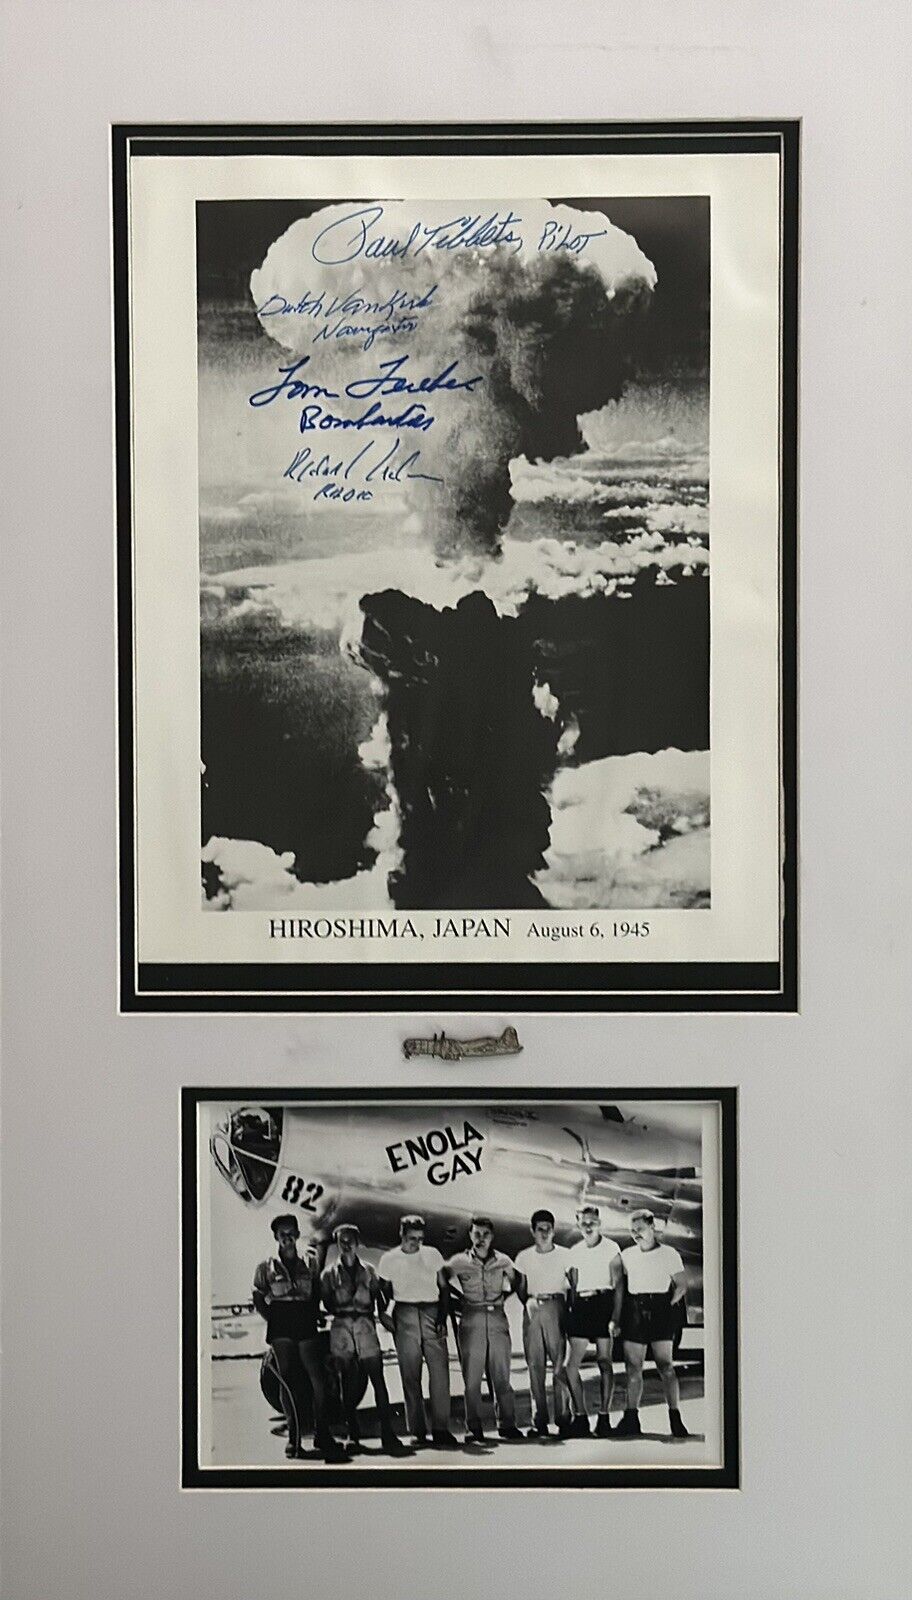 Enola Gay Signed Hiroshima, Japan Aug 6, 1945 Photo Signed By 4, Crew Pic, & Pin